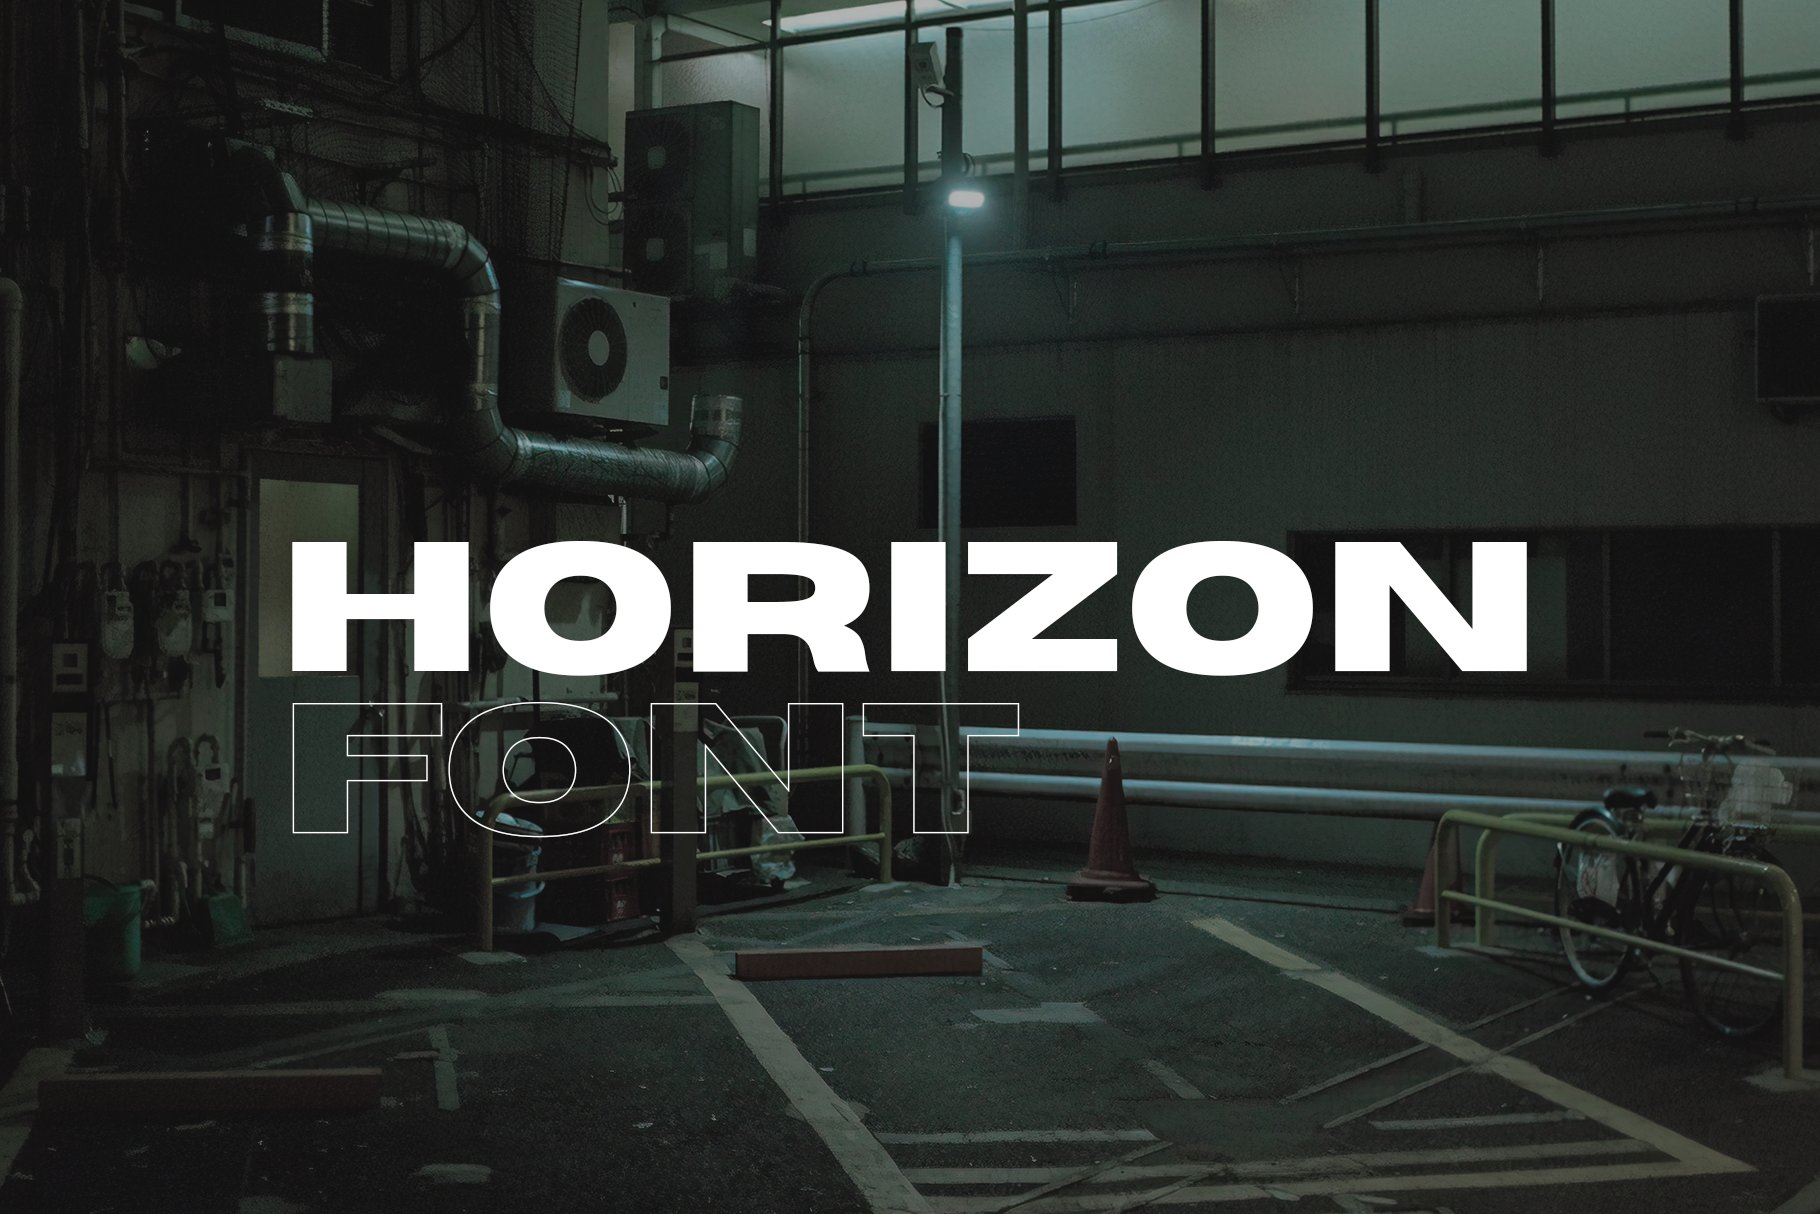 Horizon - Wide Sans Serif cover image.